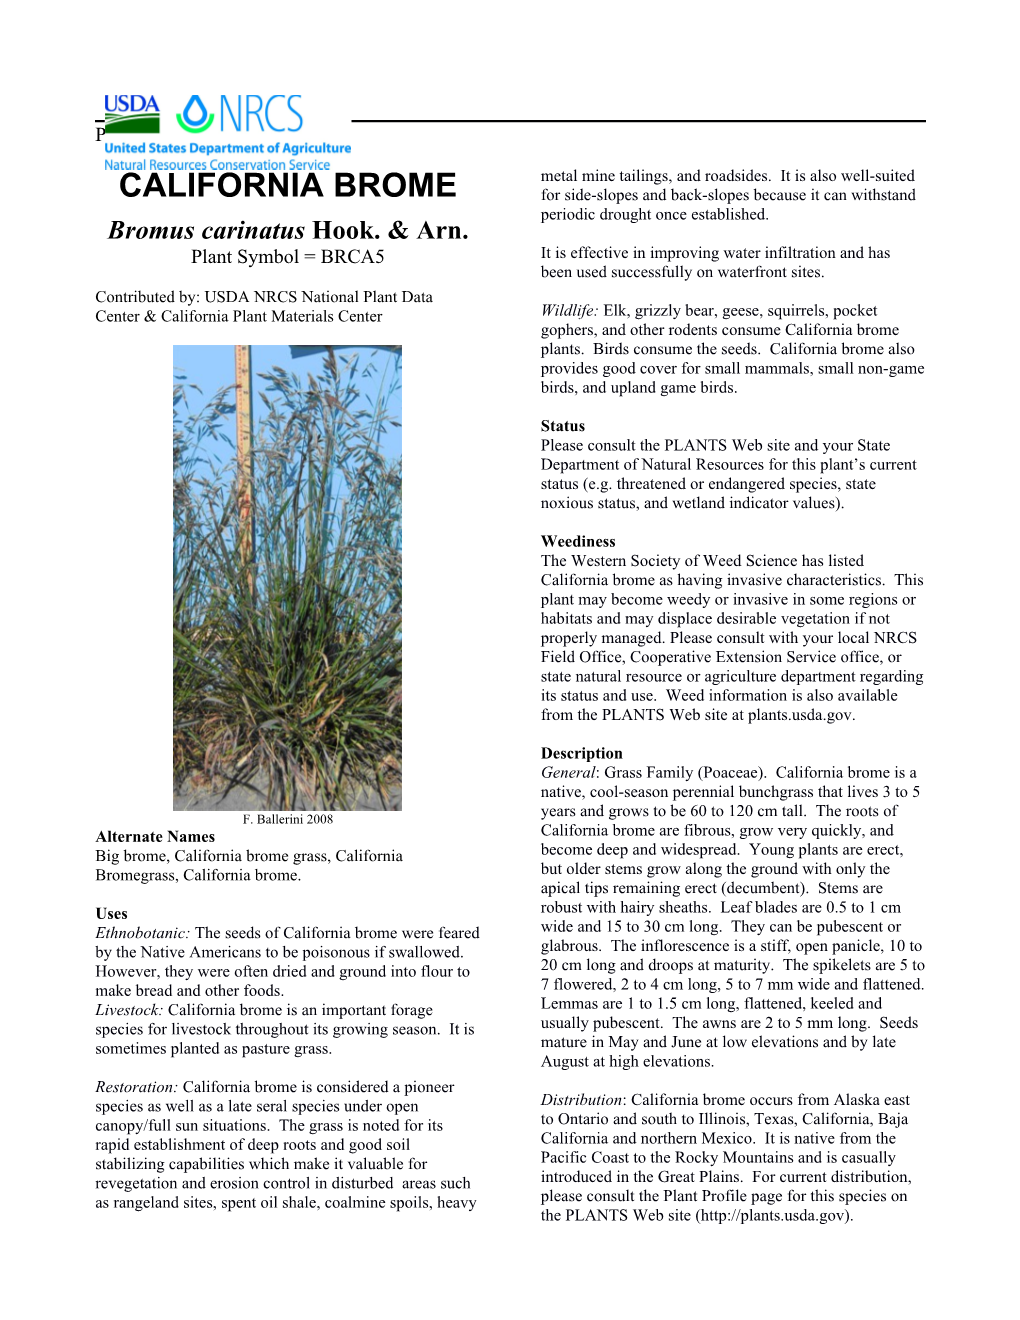 CALIFORNIA BROME Plant Guide